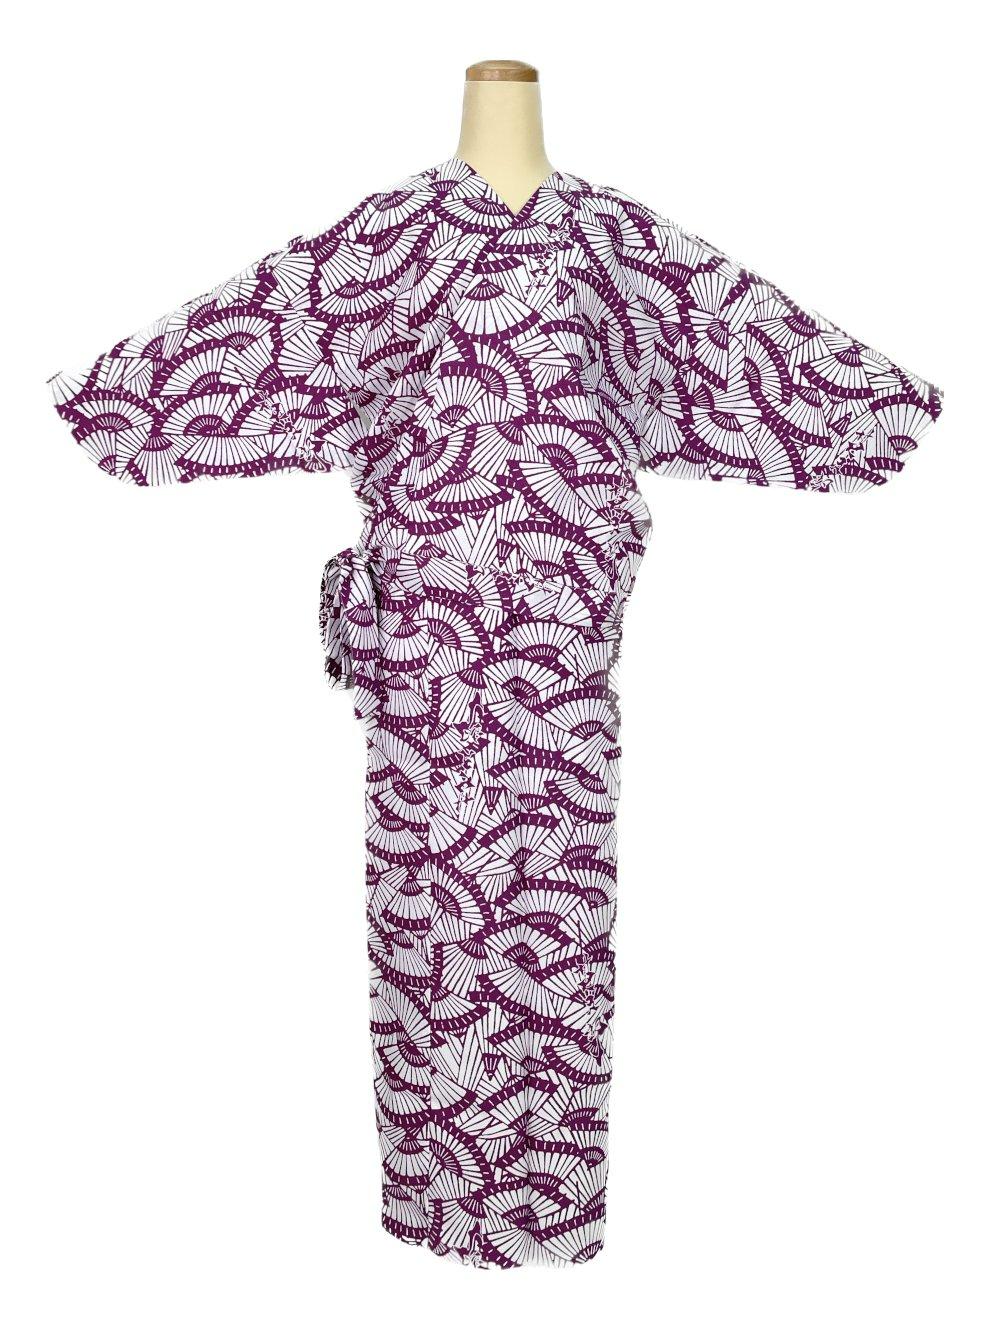 二部式着物(ゴムスカート) 袷 扇子 紫画像